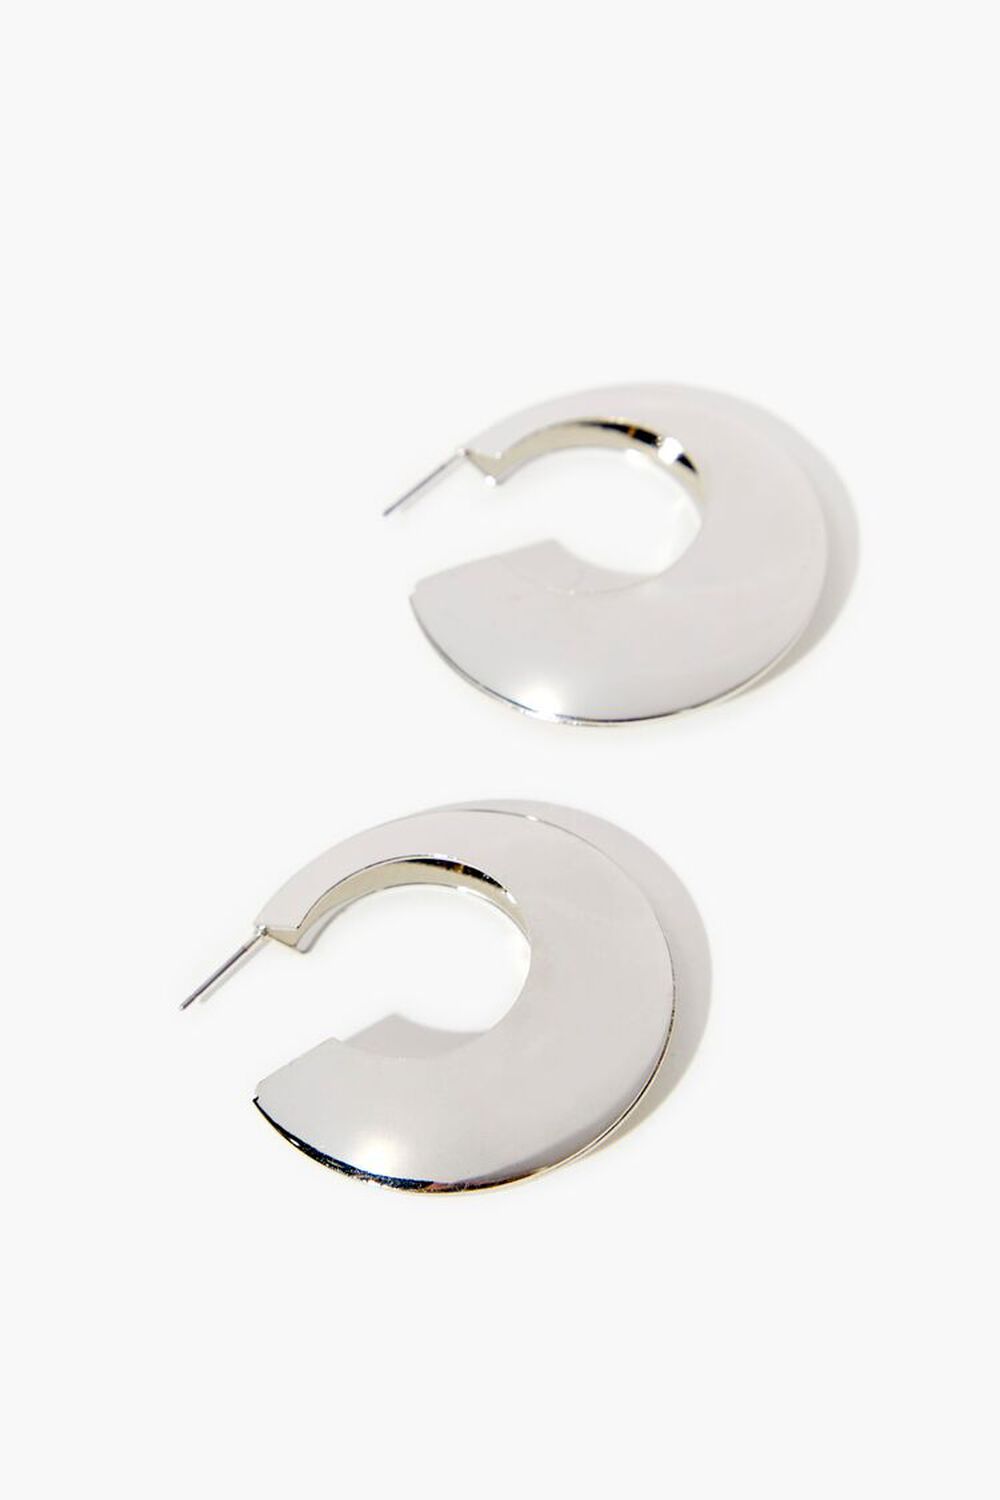 SILVER Wide-Band Hoop Earrings, image 3